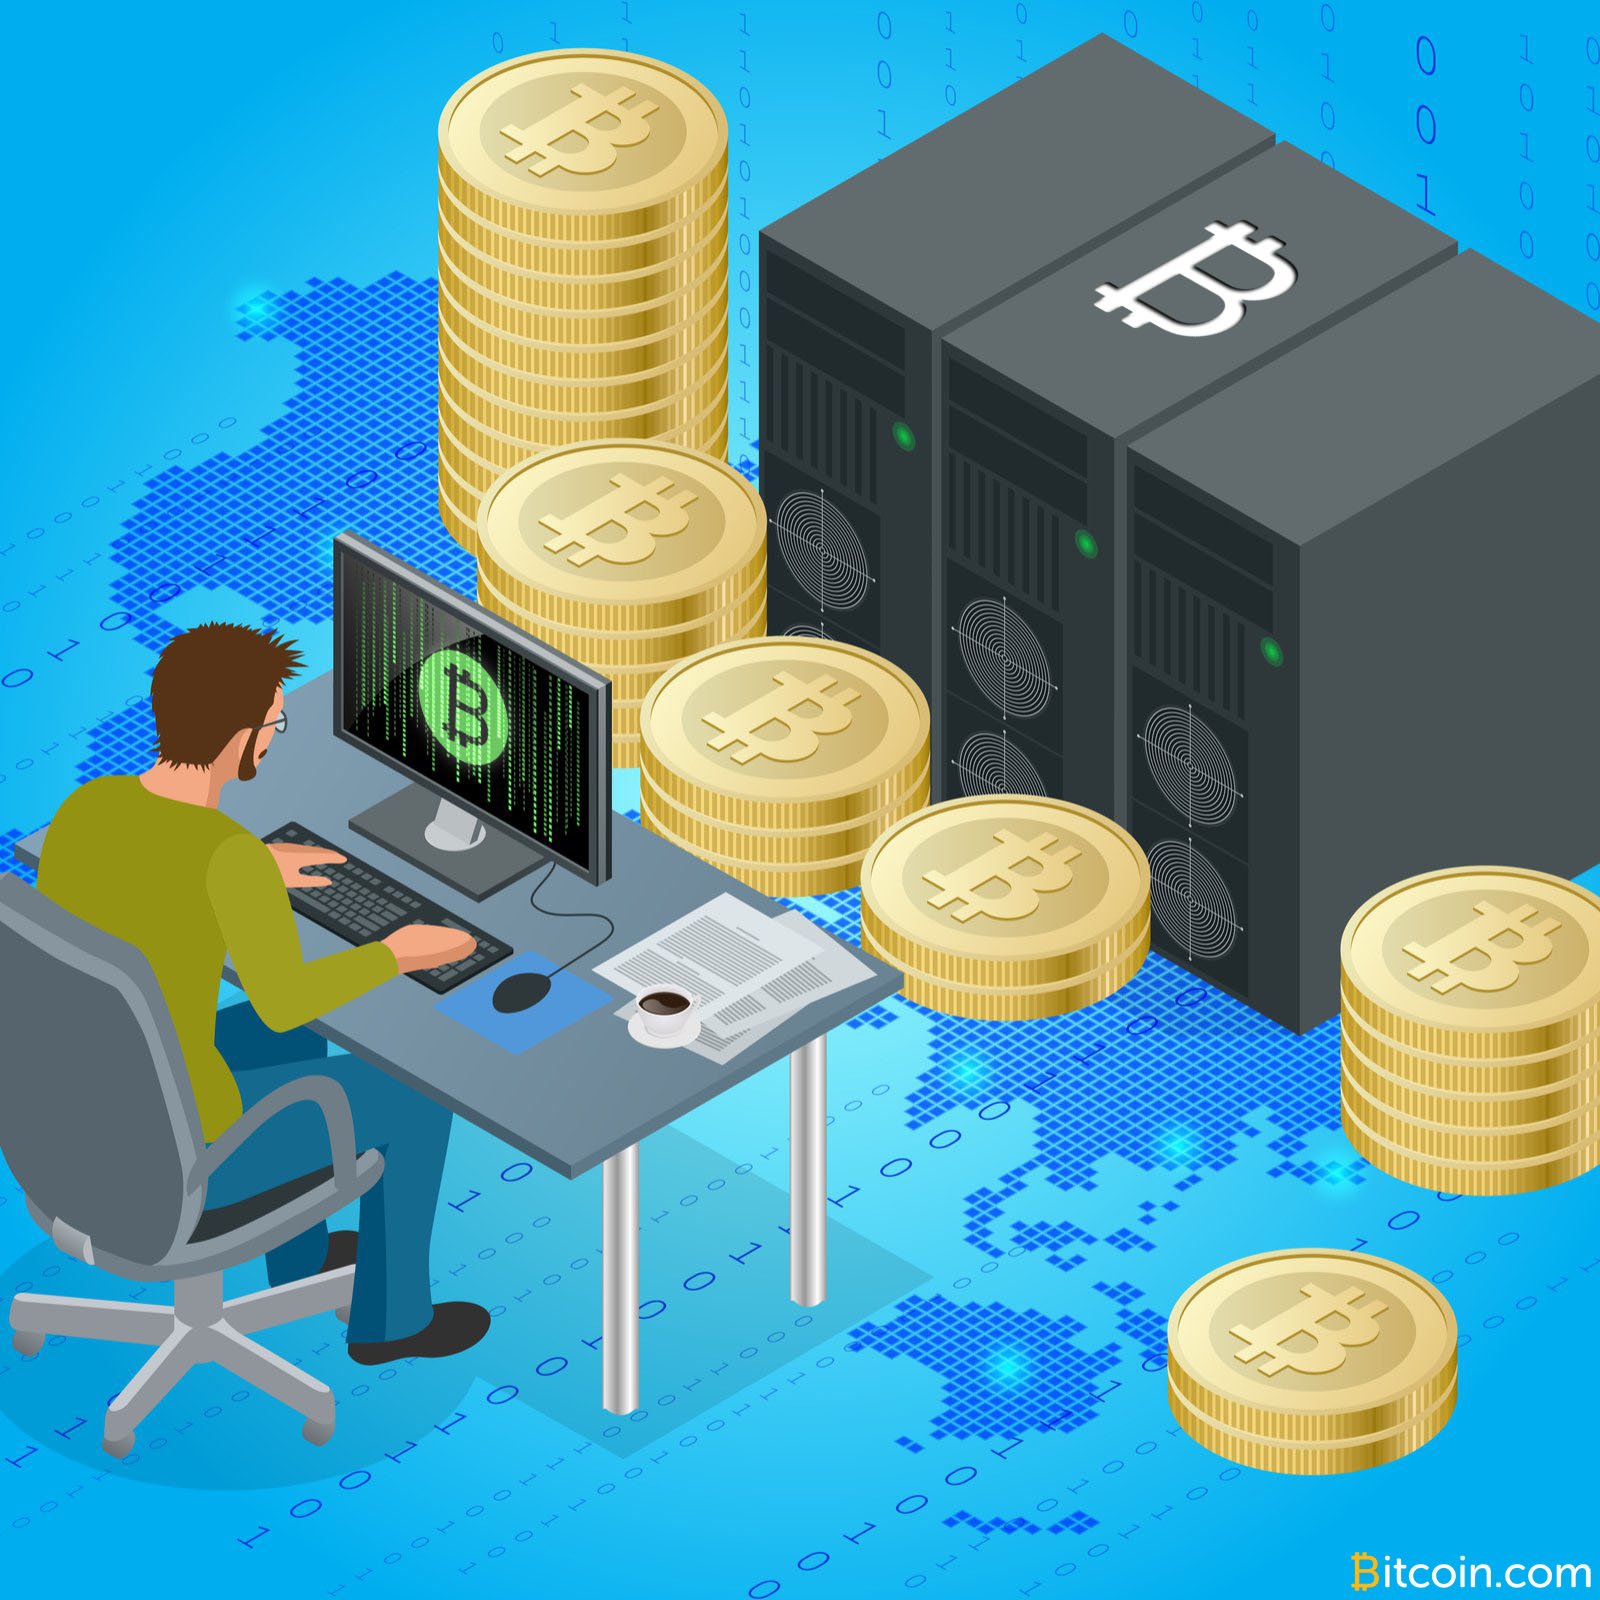 darbo pradžia su bitcoin mining